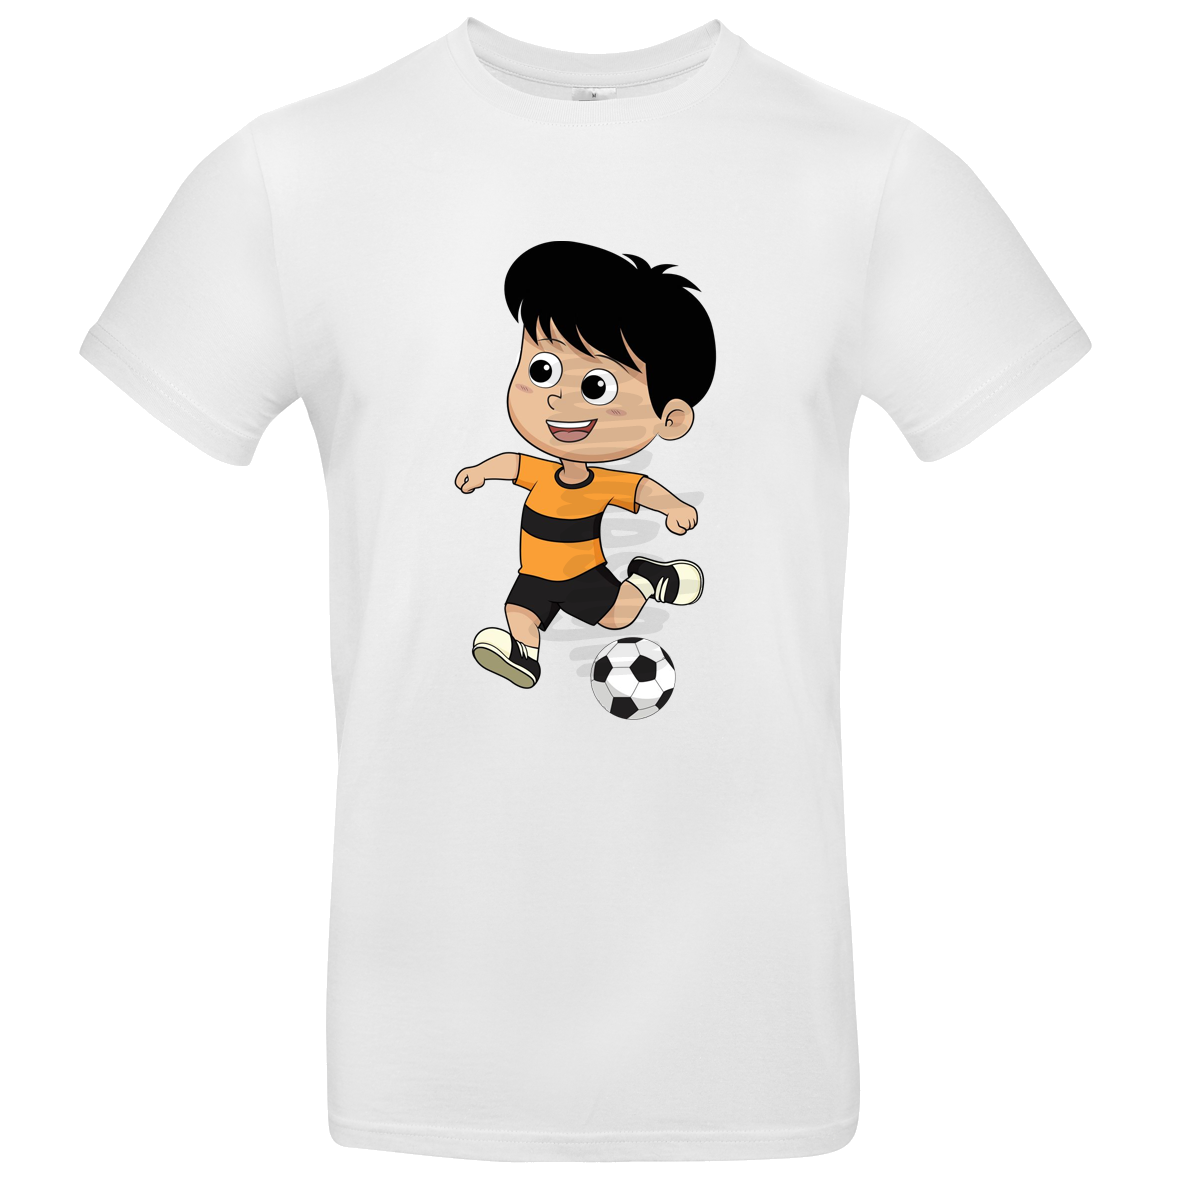 Kinder T Shirt mit Junge der Fußball spielt 104 - 158